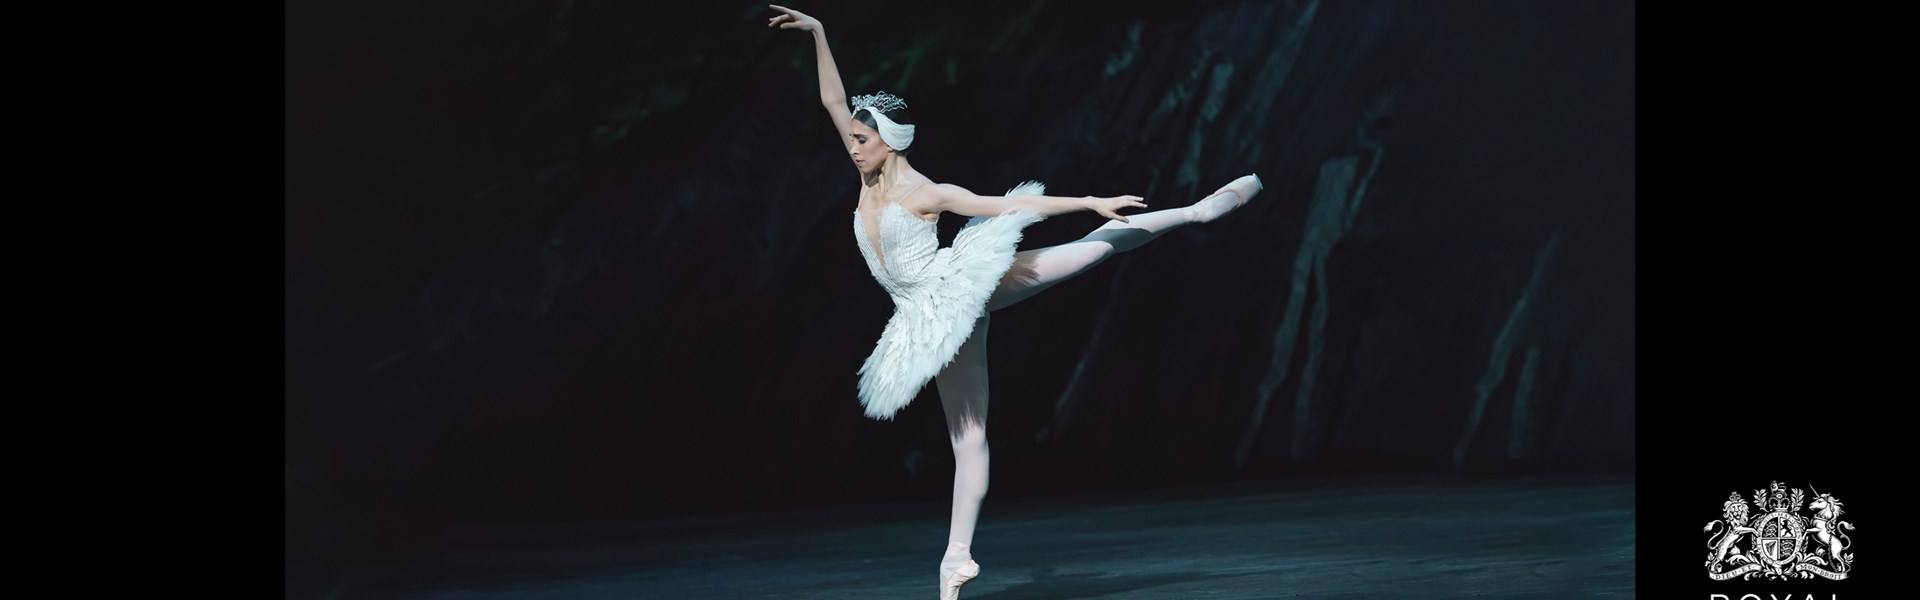 Royal Ballet: Swan Lake (Live Screening)